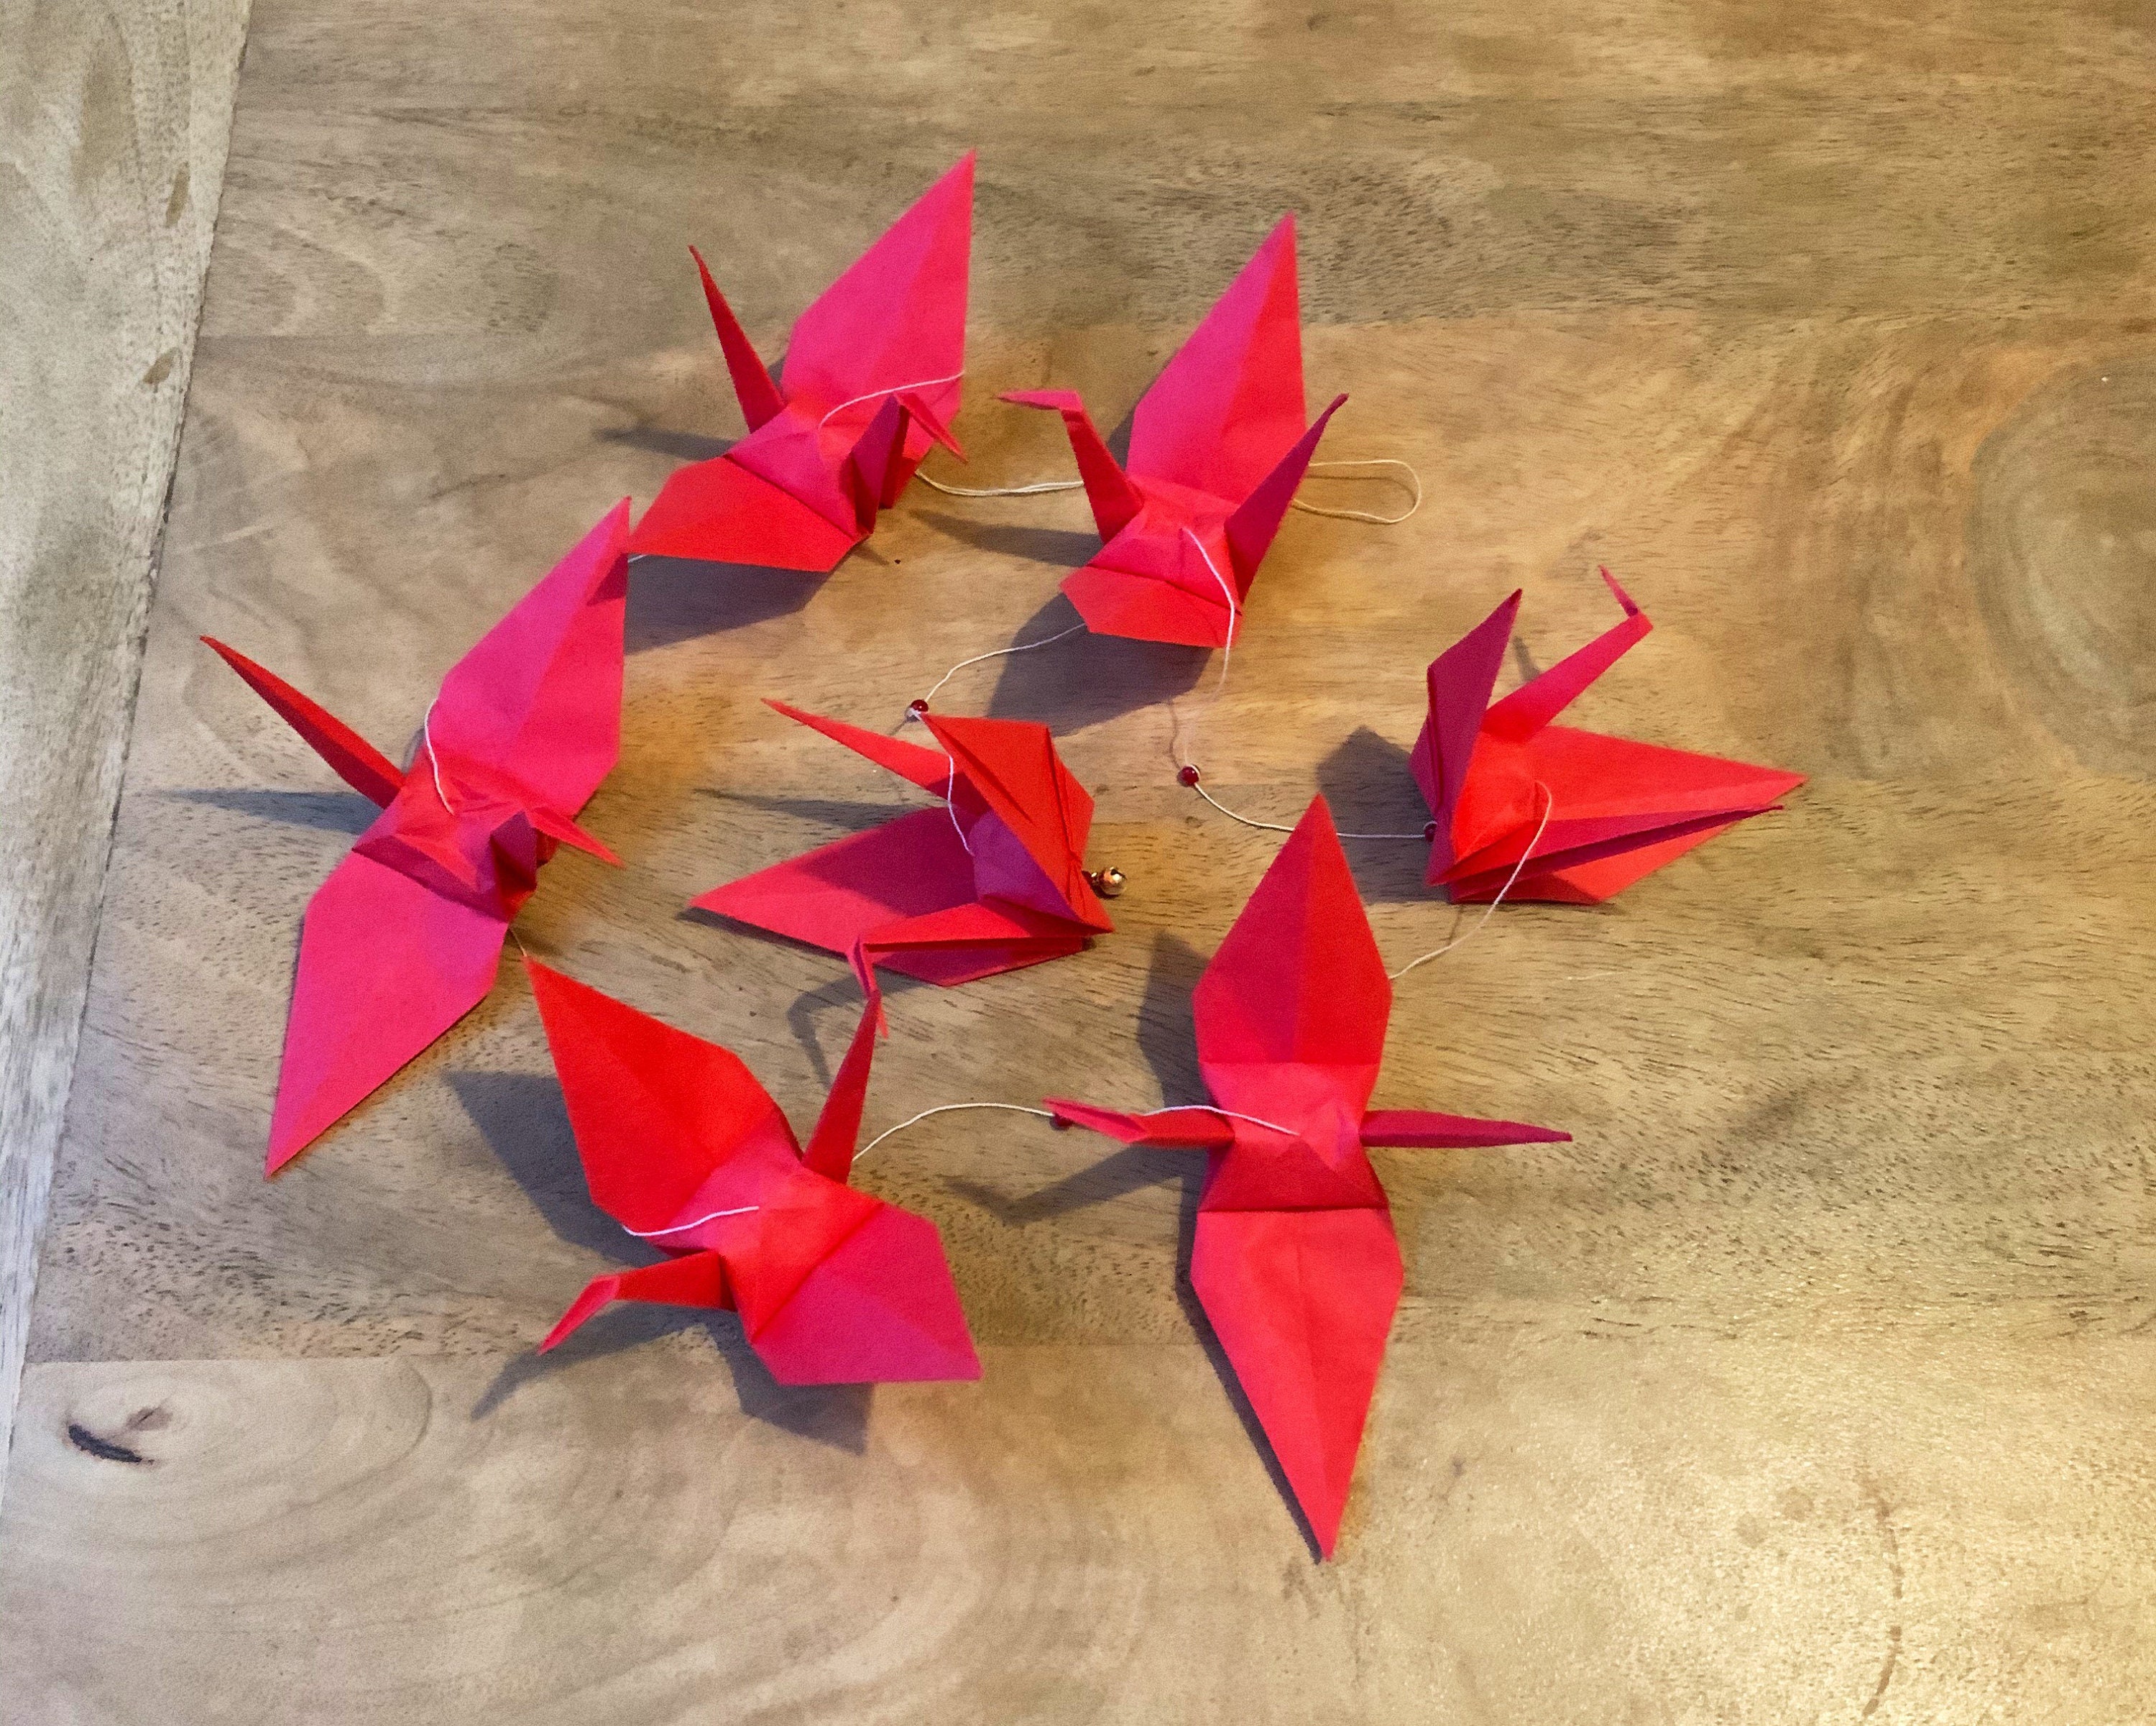 100 Medium Red Origami Paper Cranes-3.5 Inches Crane 